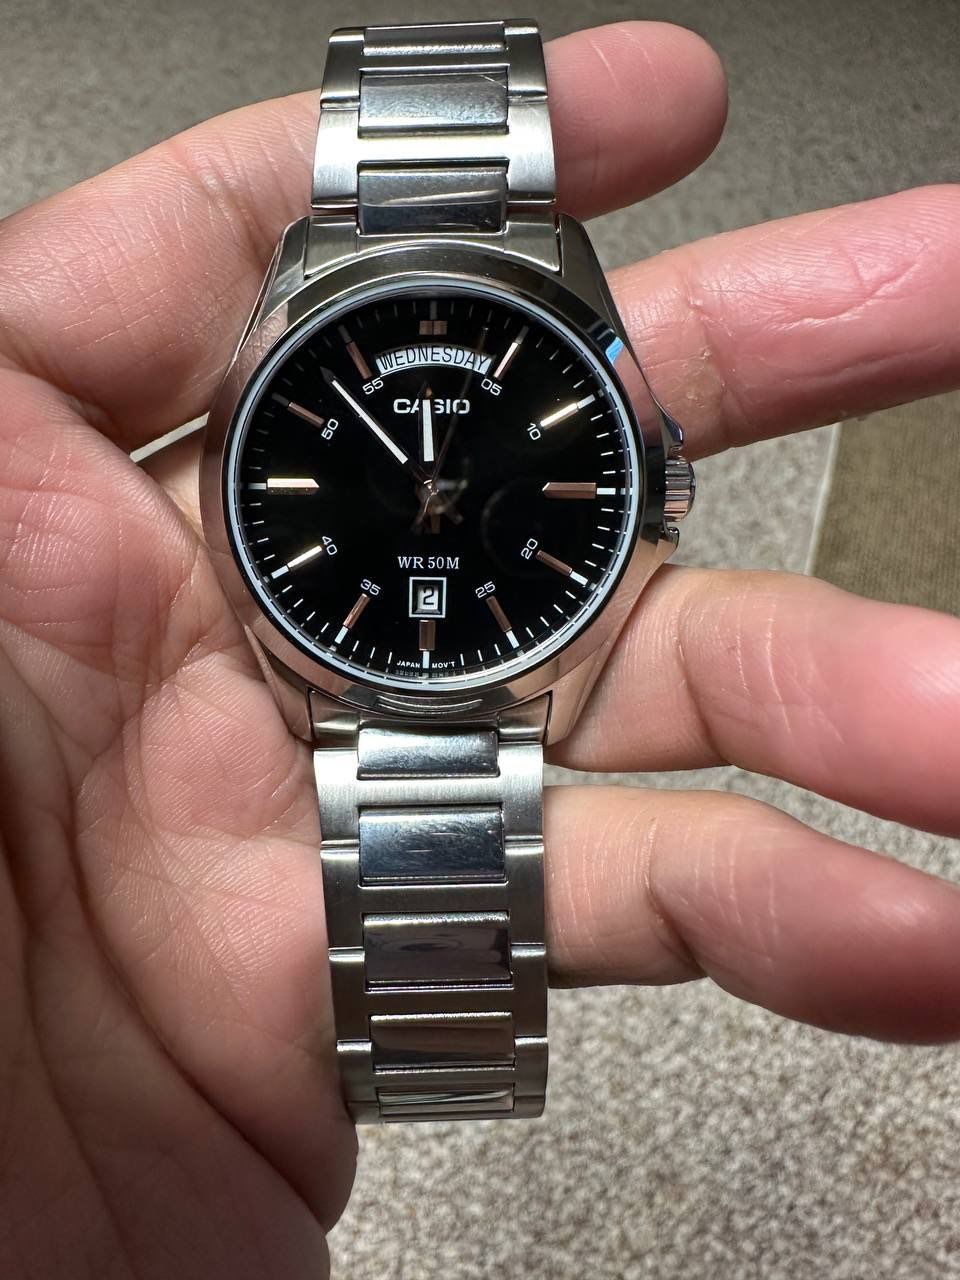 Наручные часы CASIO MPT-1370, "Rolex", полный день